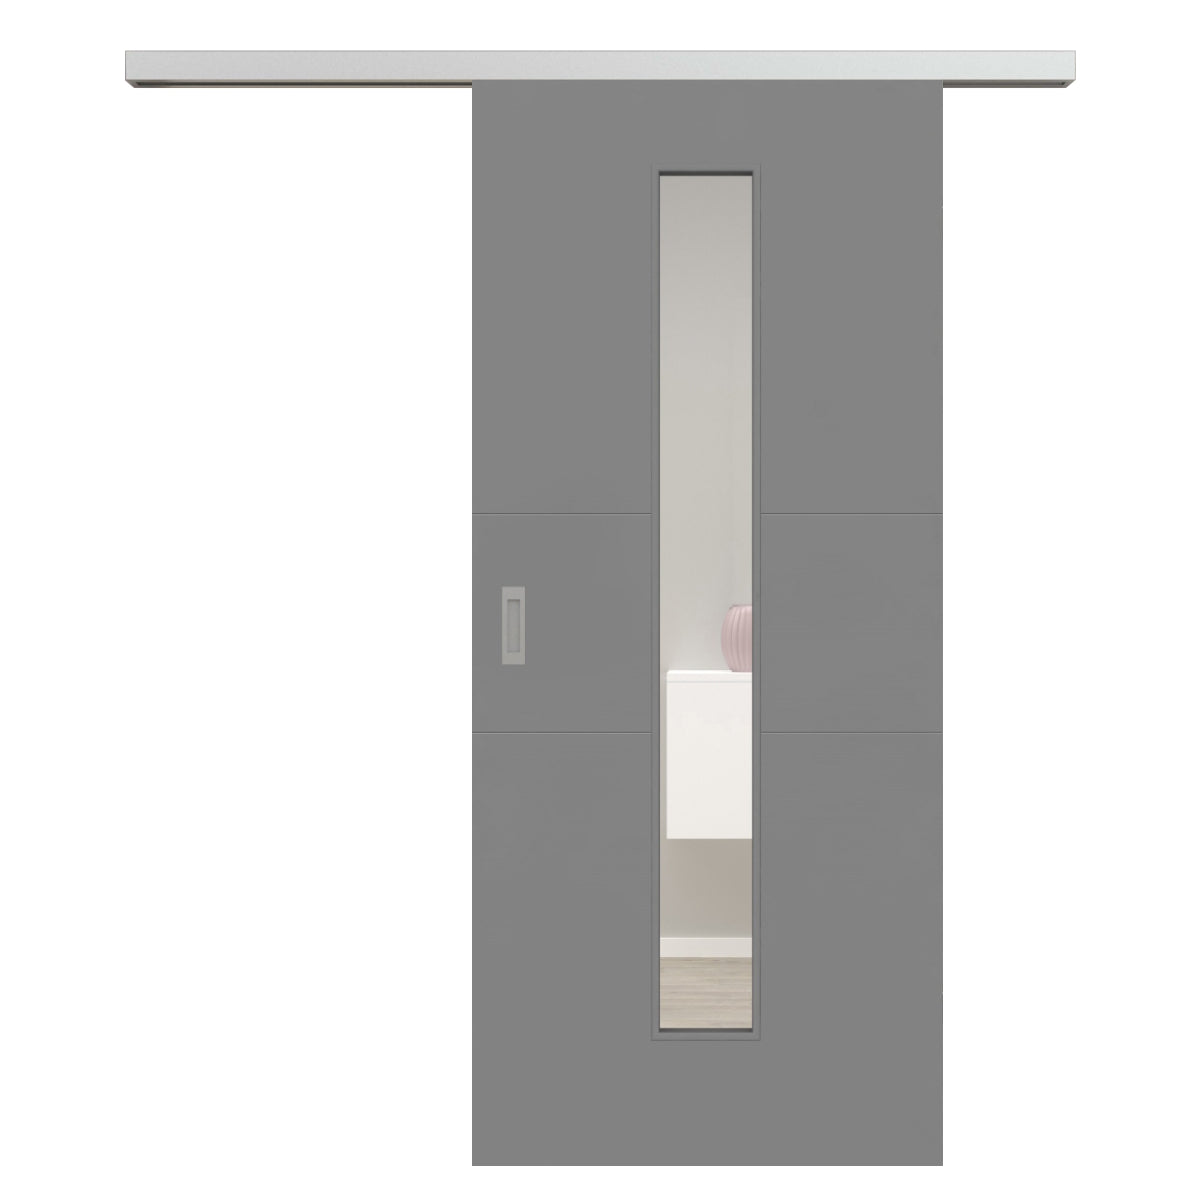 Schiebetür für Set mit Edelstahllaufkasten mit Lichtausschnitt grau 2 Rillen quer - Modell Designtür Q27LAM